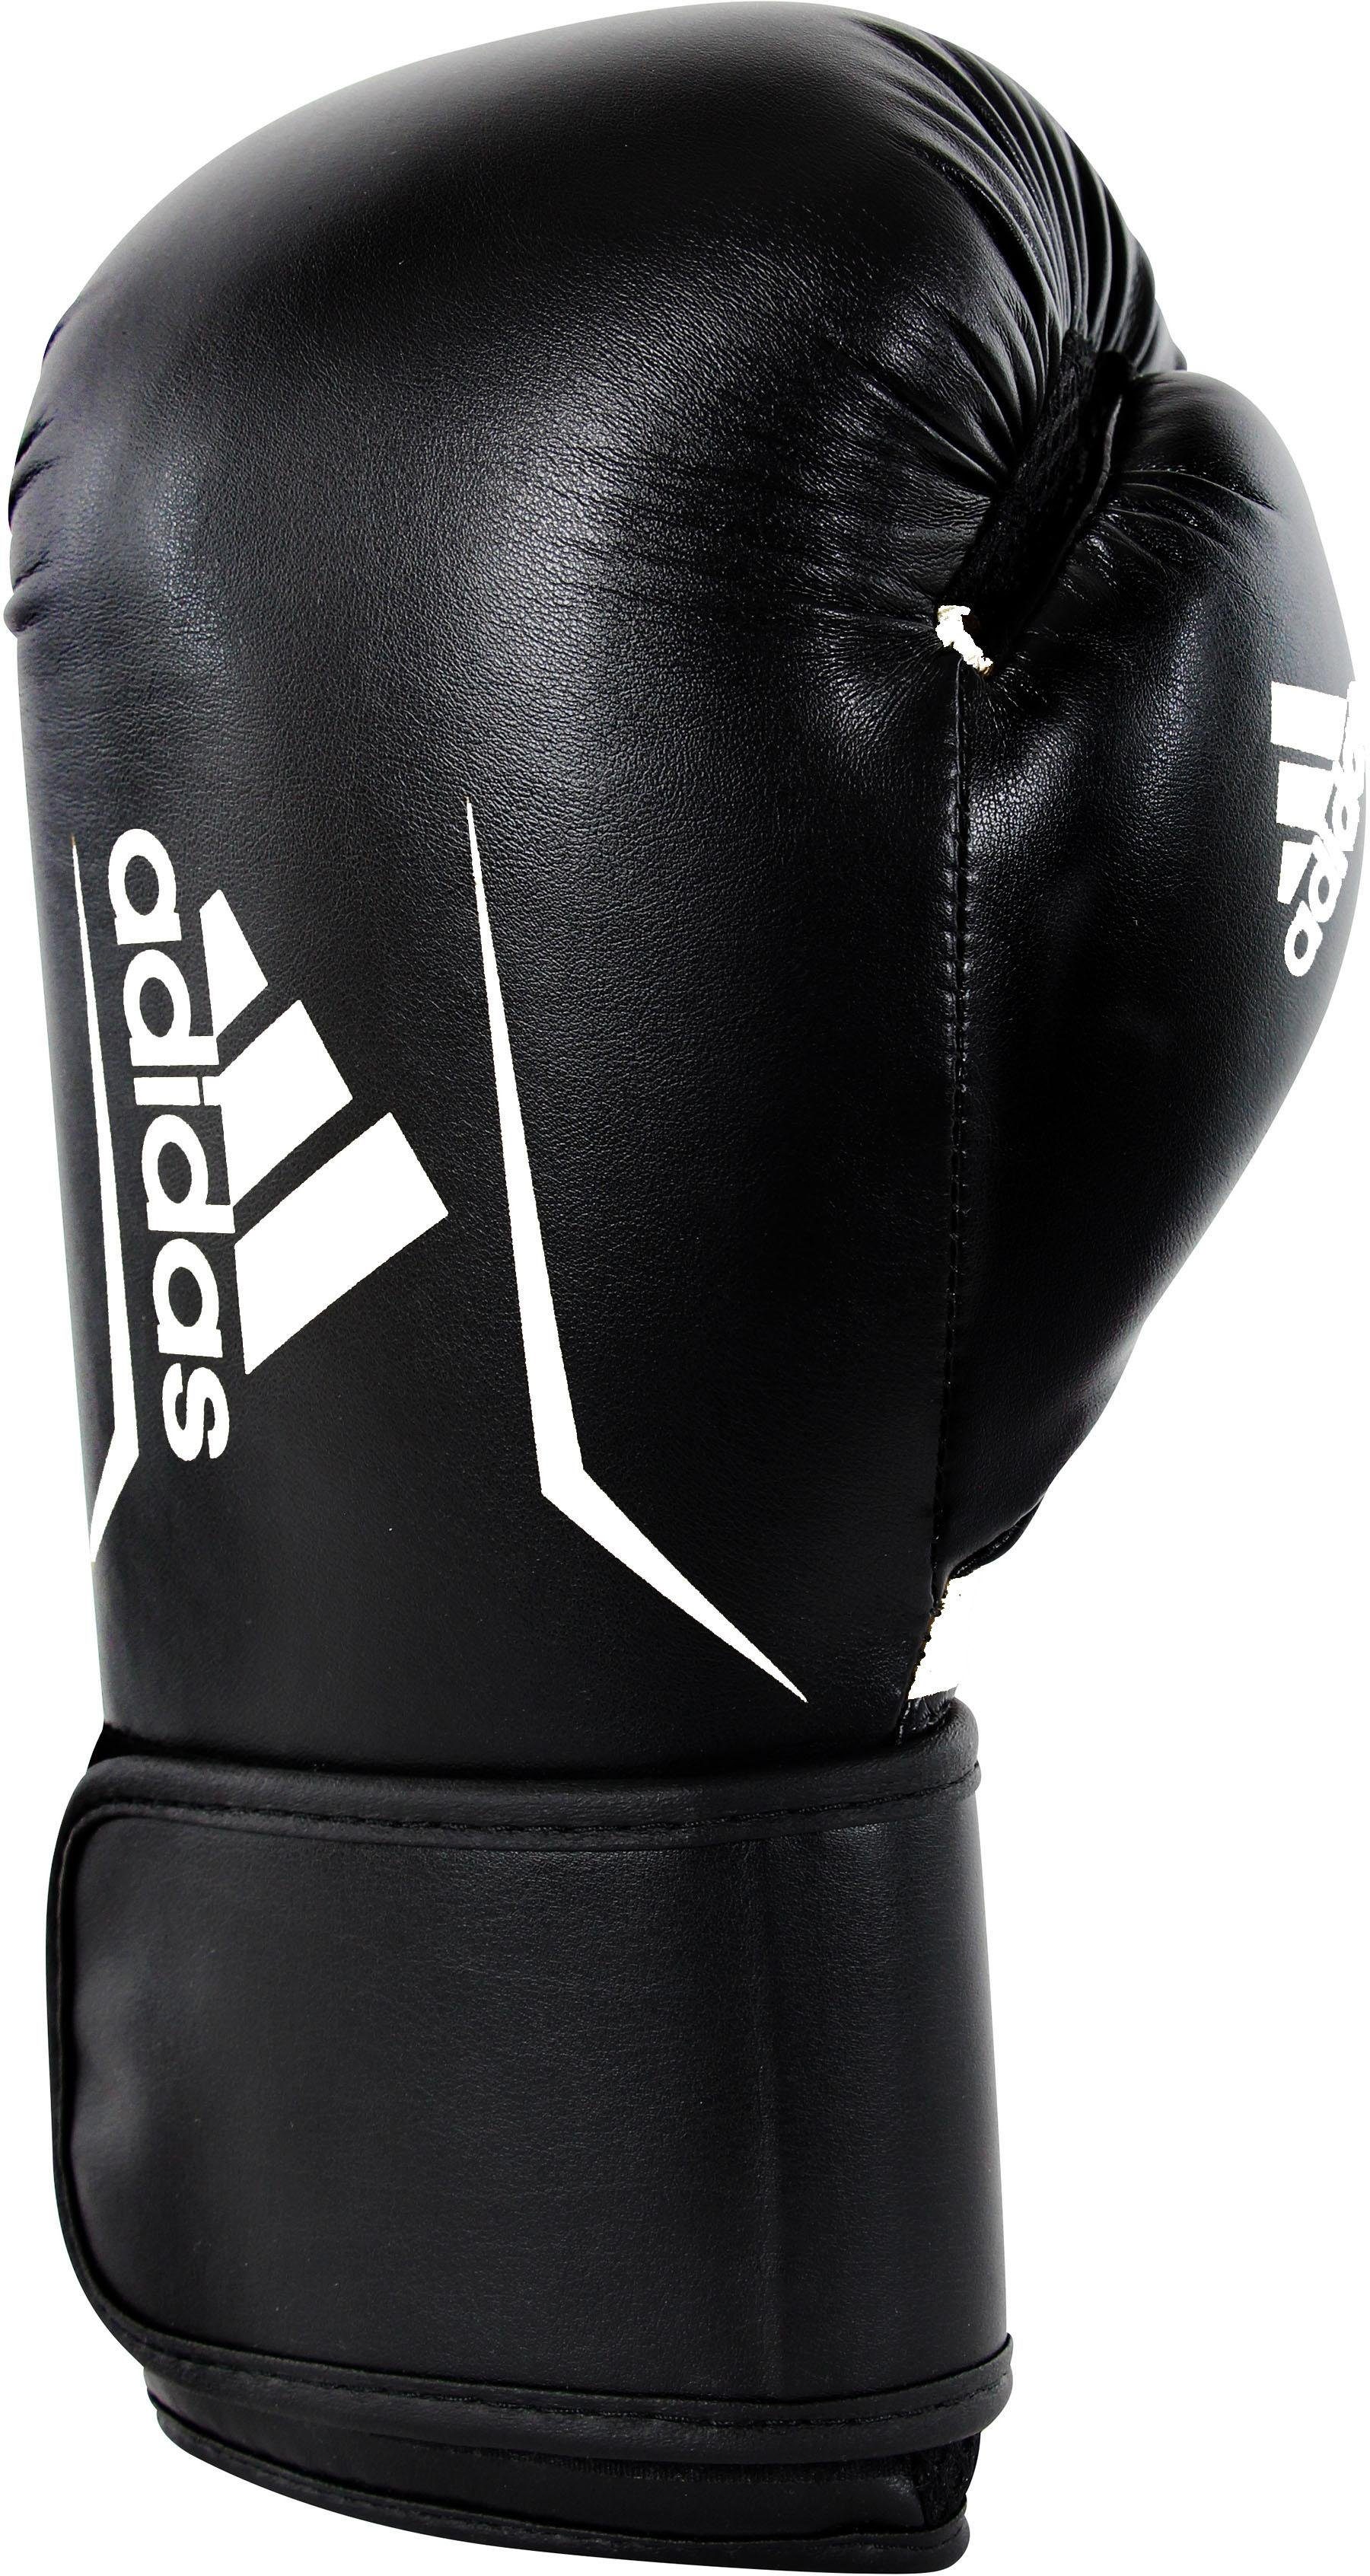 100 Performance Boxhandschuhe adidas Speed schwarz/weiß